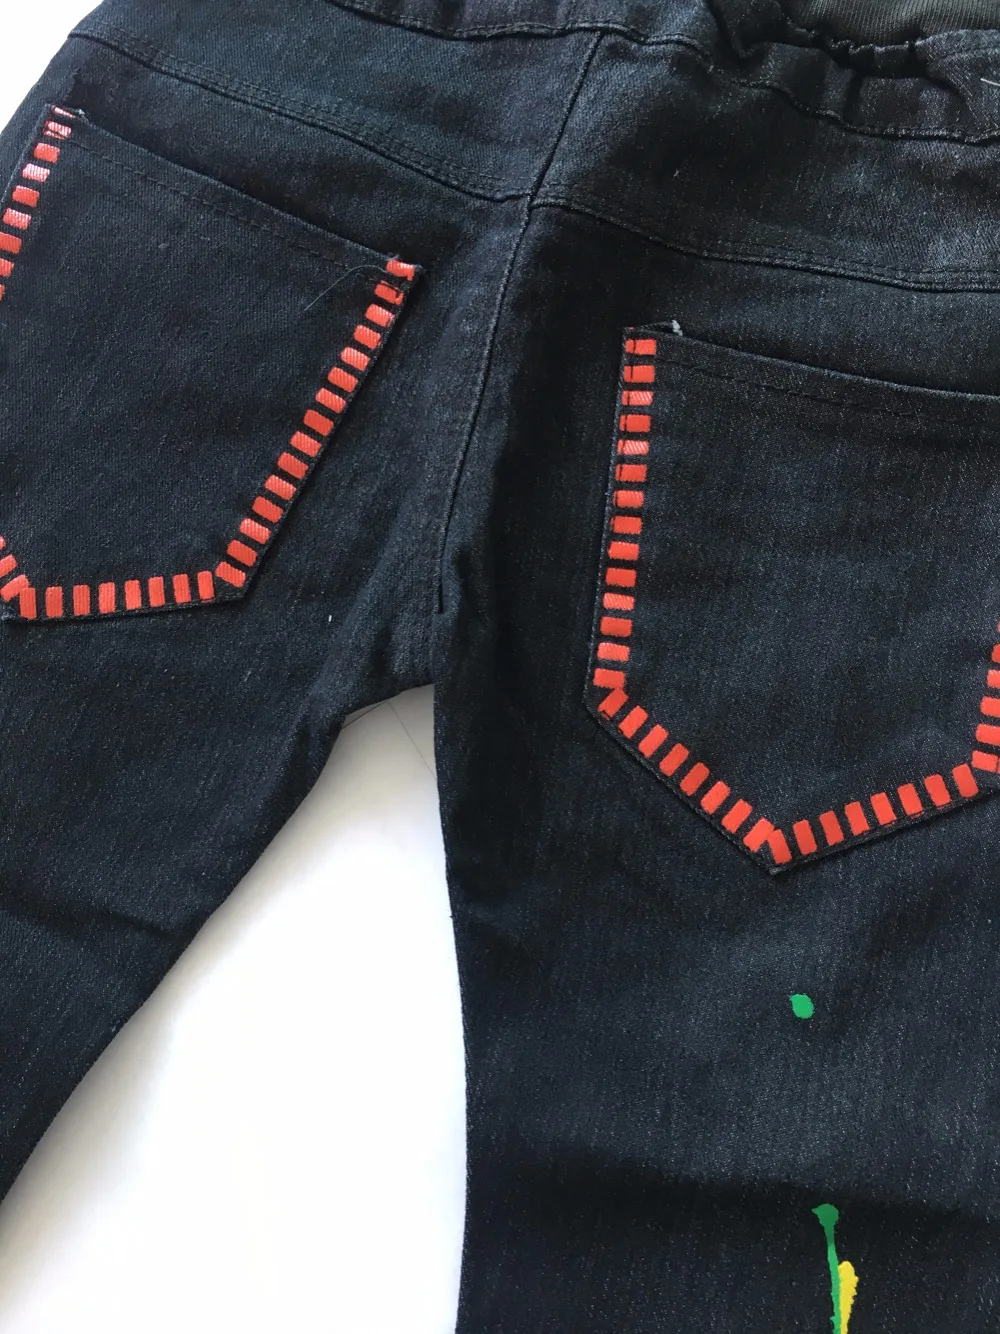 IENENS/От 5 до 13 лет узкие прямые джинсы для мальчиков повседневные брюки детские модные длинные джинсовые штаны детские штаны с эластичной резинкой на талии